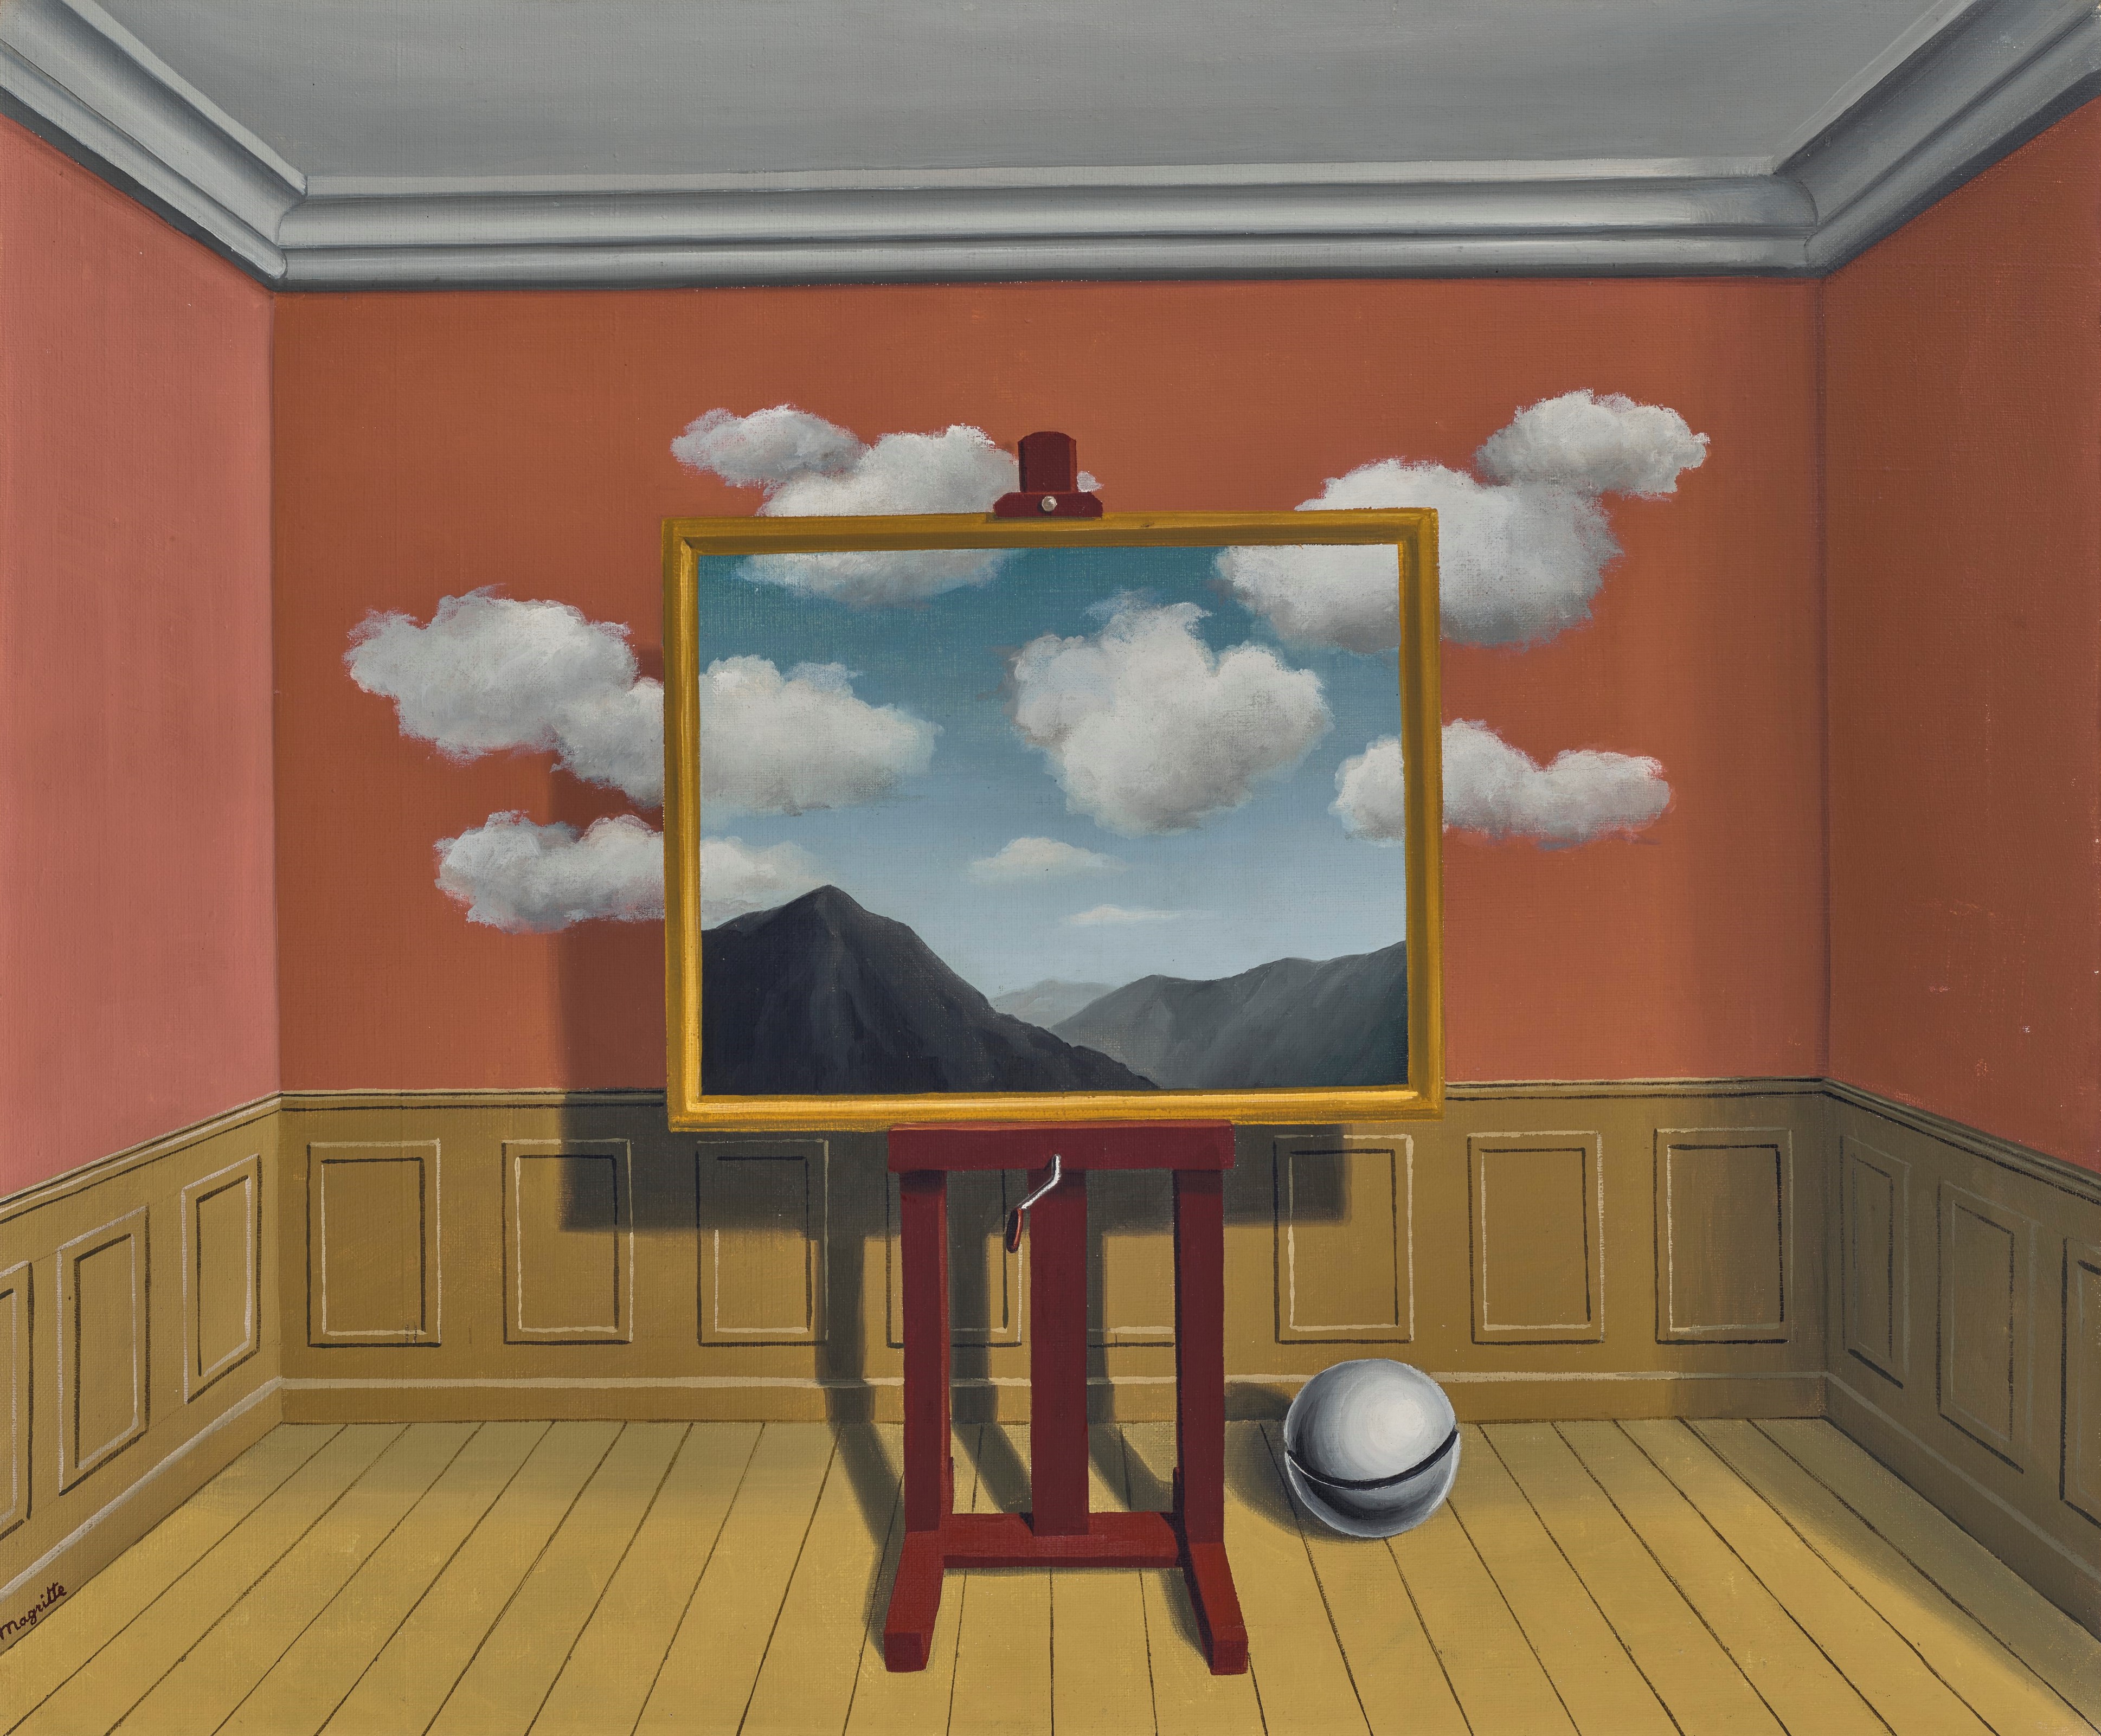 LOT 108 - René Magritte - La vengeance - €14,552,500 ©Christie’s Images Ltd, 2021